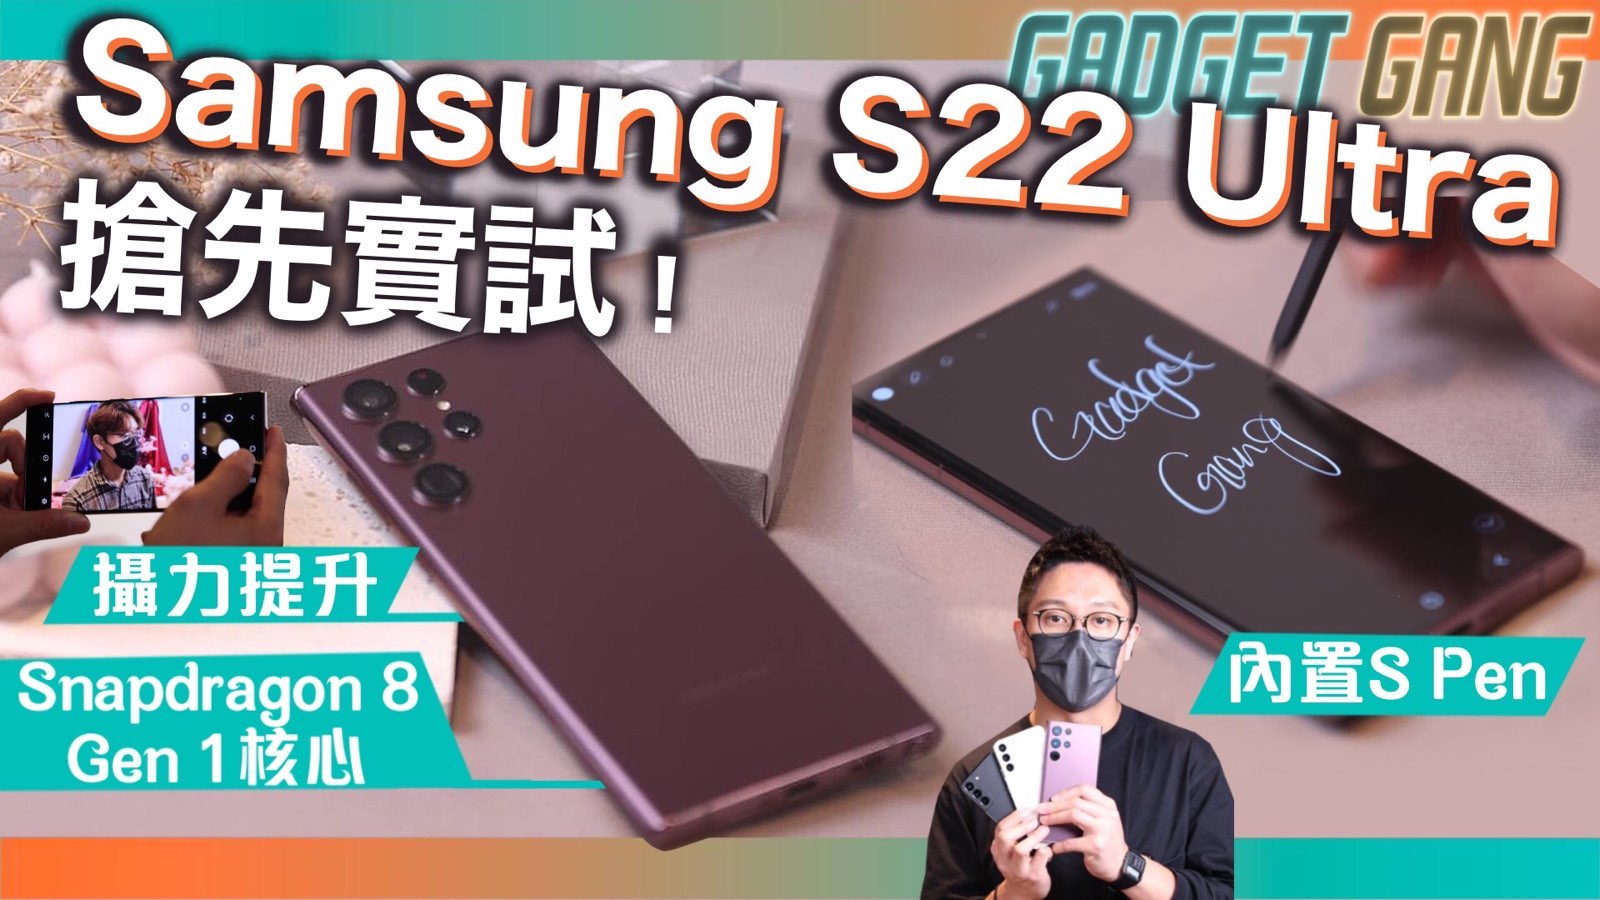 オンラインショップ SAMSUNG GALAXY 香港版 1TB黒^_^ 5G ULTRA S22 